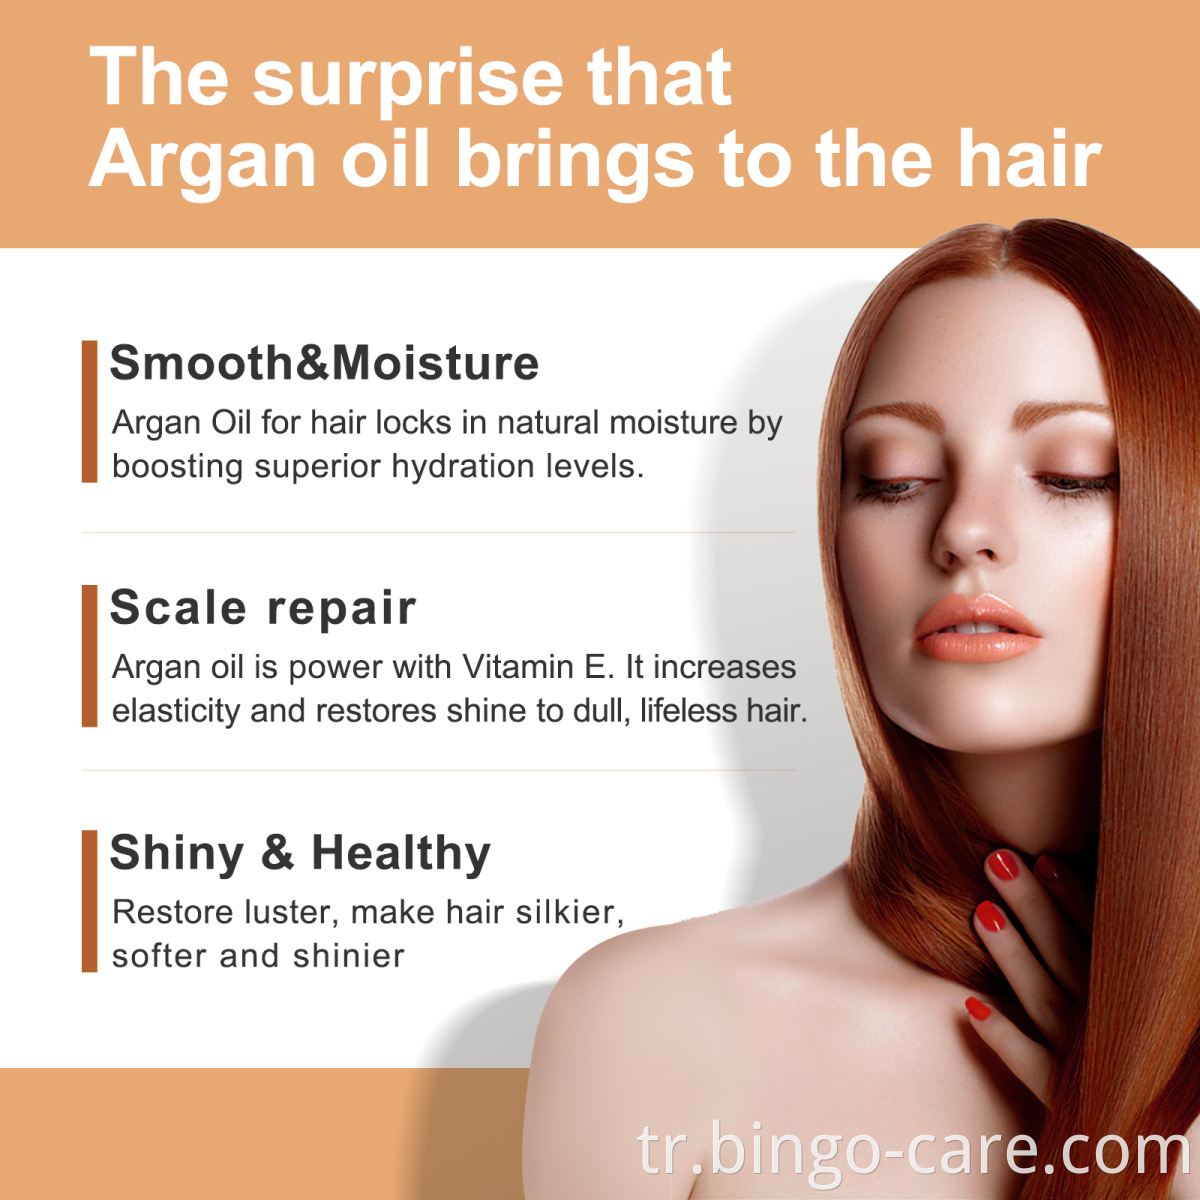 Private Label Argan yağı Serum Saç Bakımı Fas Doğal Organik %100 Saf Yağ Argan üreticileri